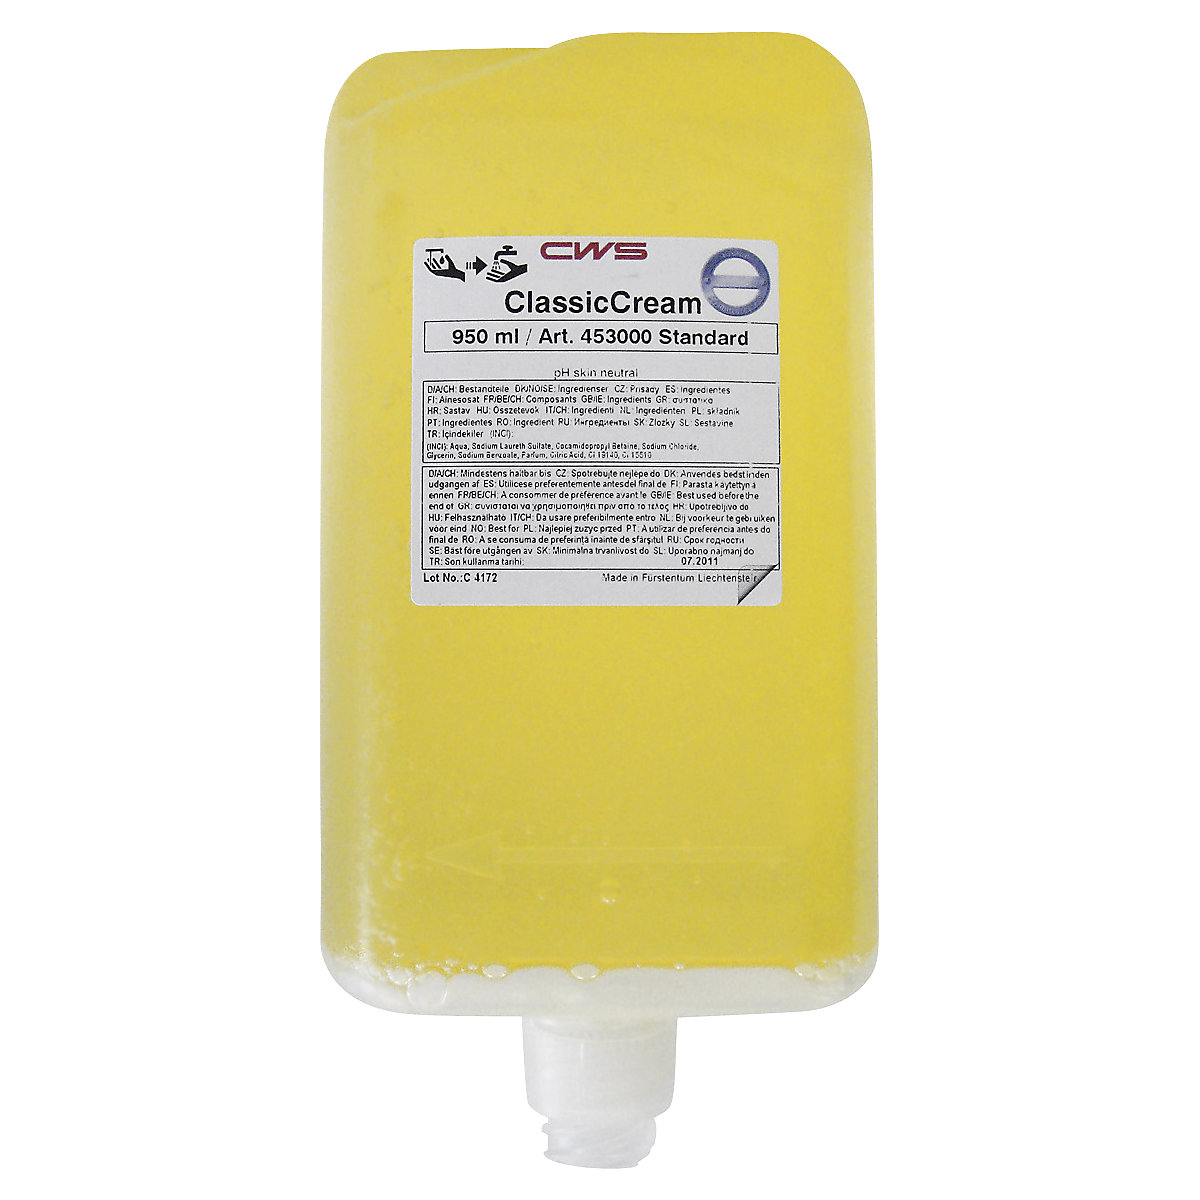 Savon liquide Classic Cream – CWS, lot de 12 bouteilles de 0,5 l, jaune, à parfum citronné